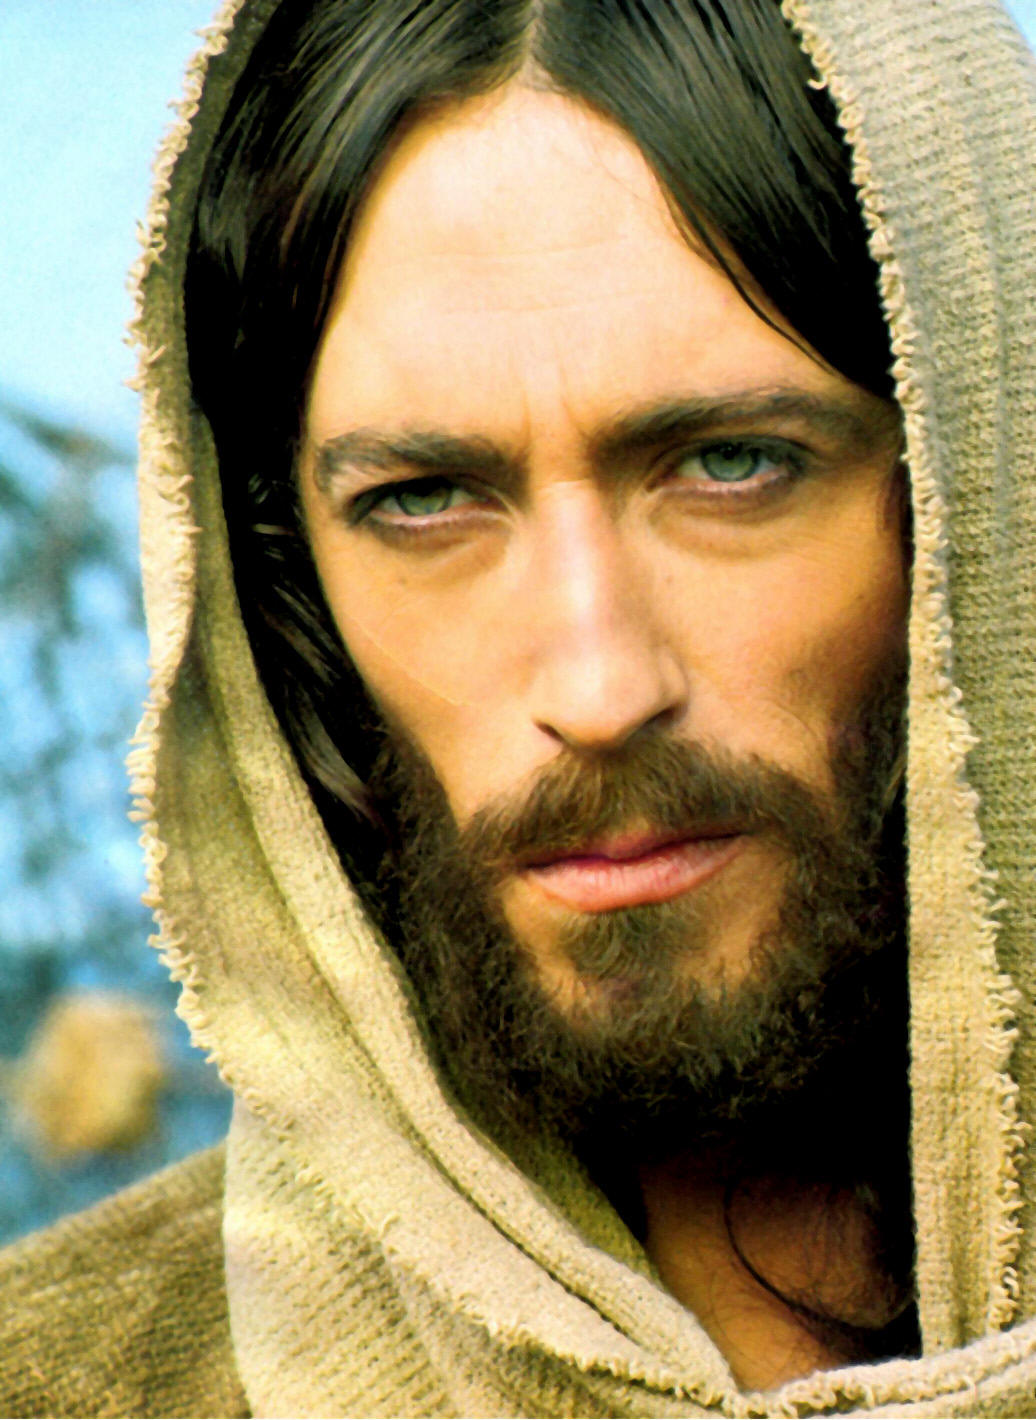 Jesus De Nazare [1977 TV Mini-Series]